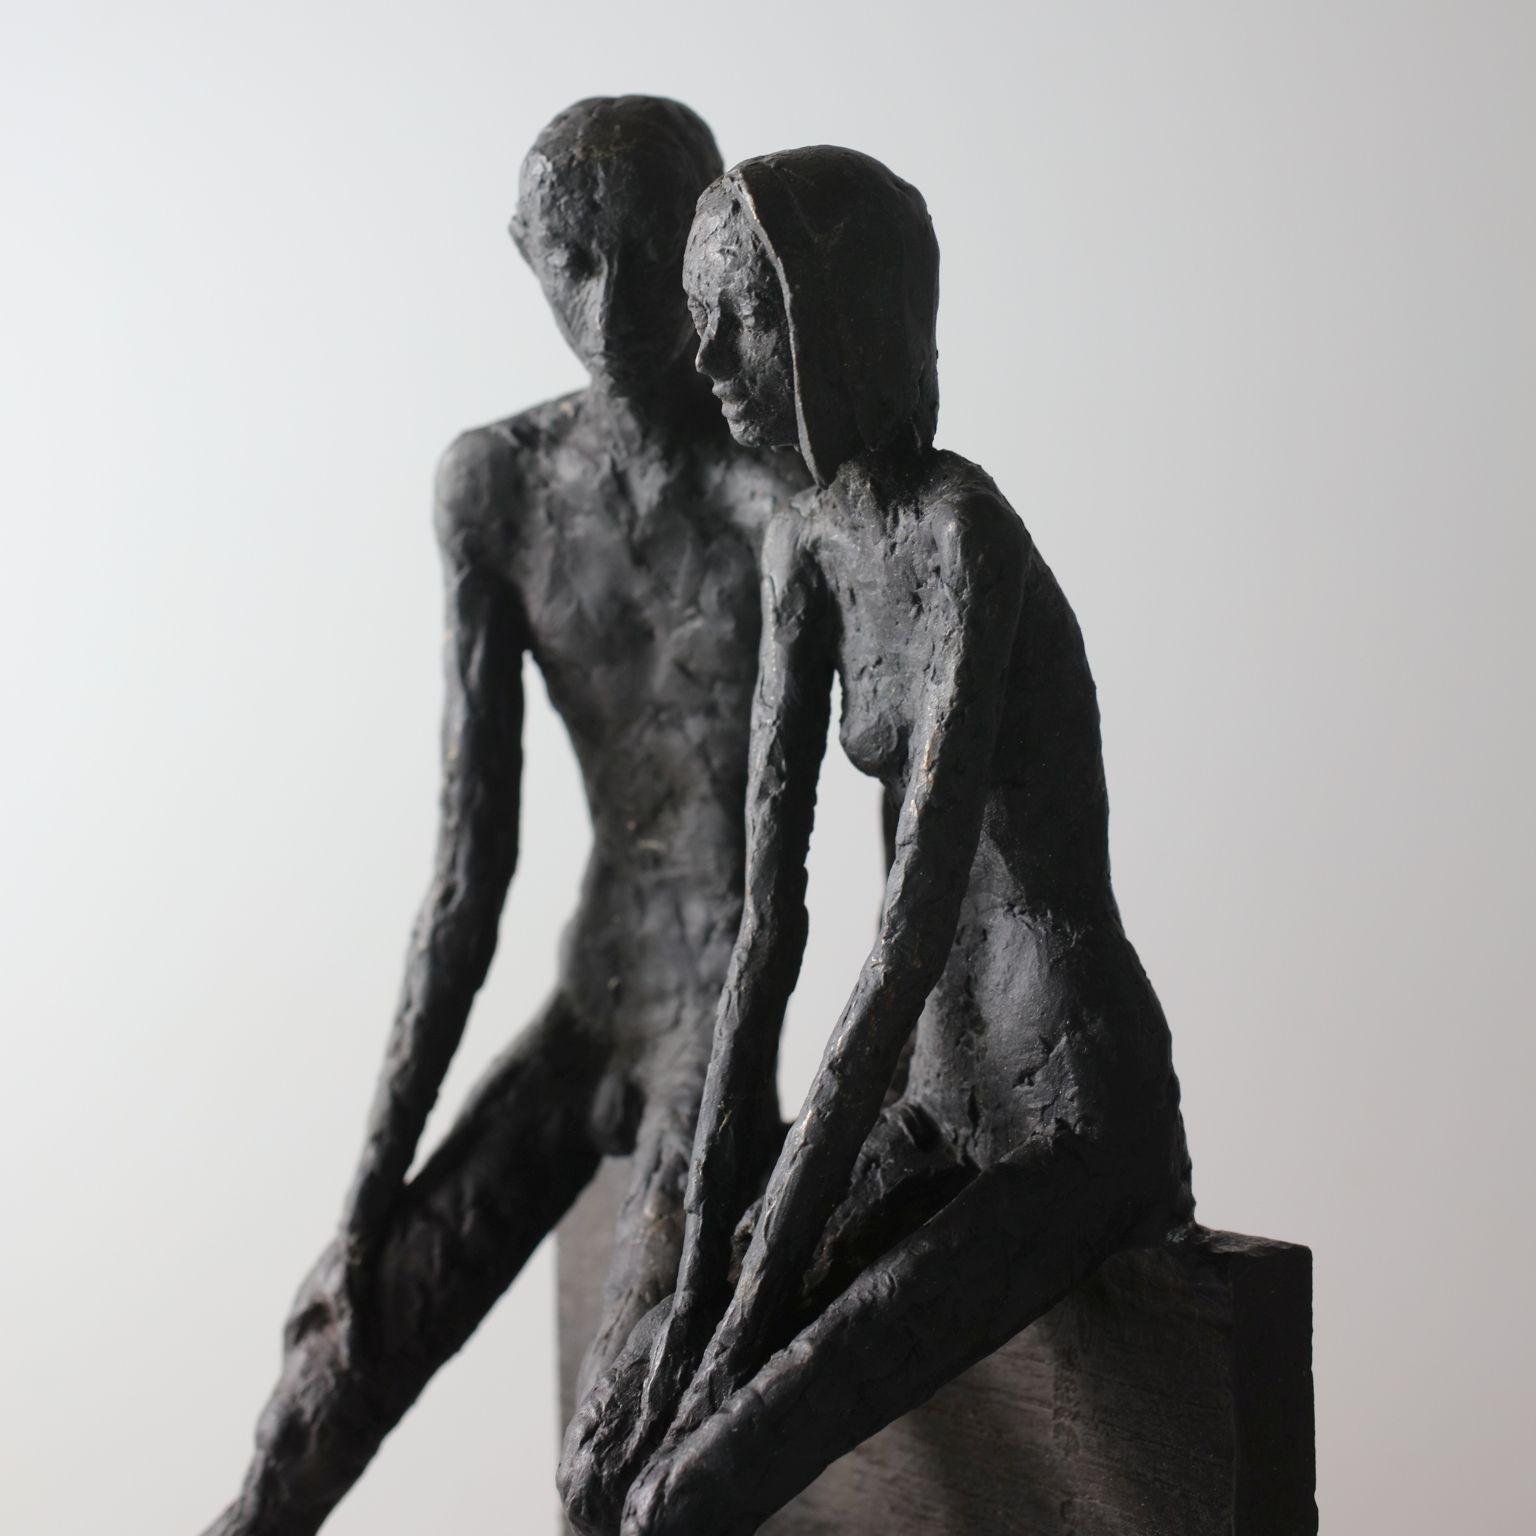 Unity - zeitgenössische Bronzeskulptur eines nackten Paares, das auf einem Bronzeblock sitzt